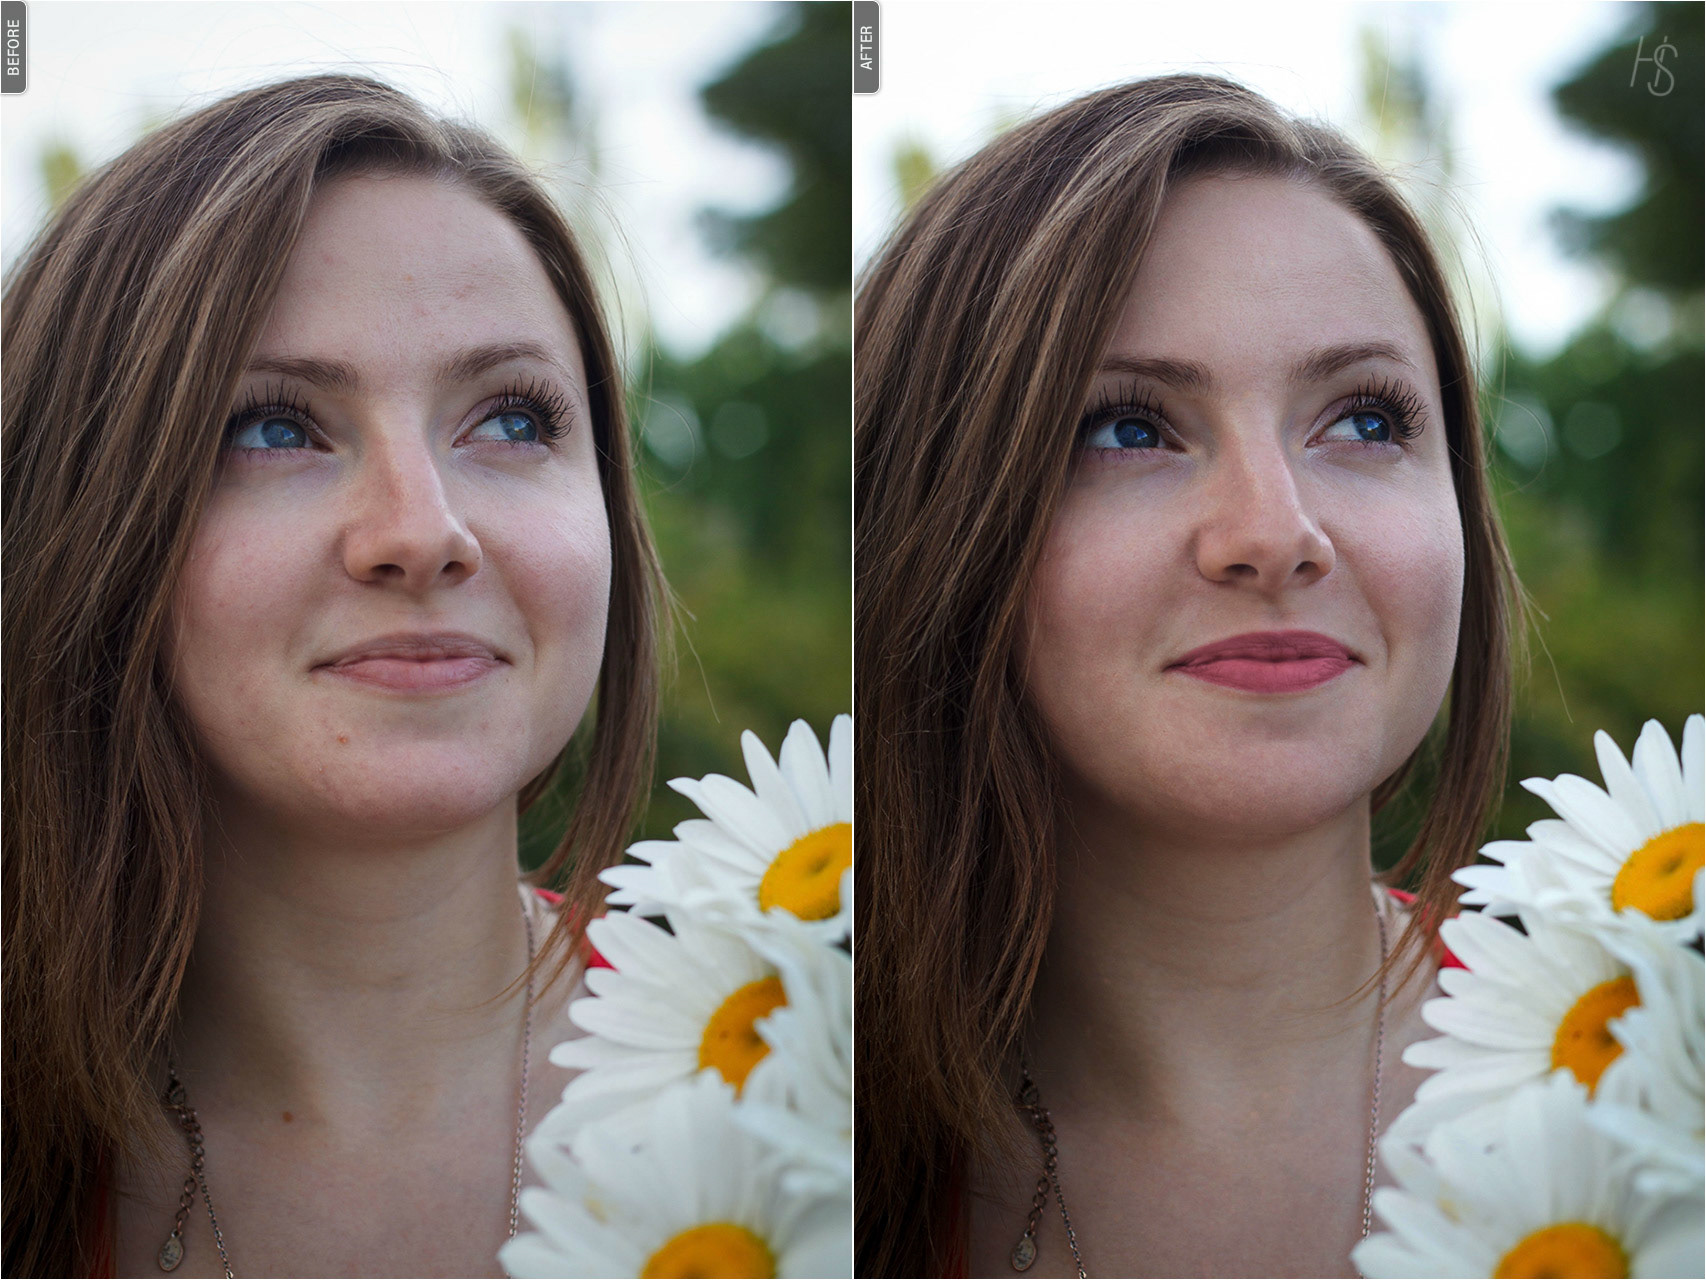 Отредактировать фото. Девушка в цветокоррекции. До и после цветокоррекции. Портрет без цветокоррекции. Исходники для цветокоррекции.